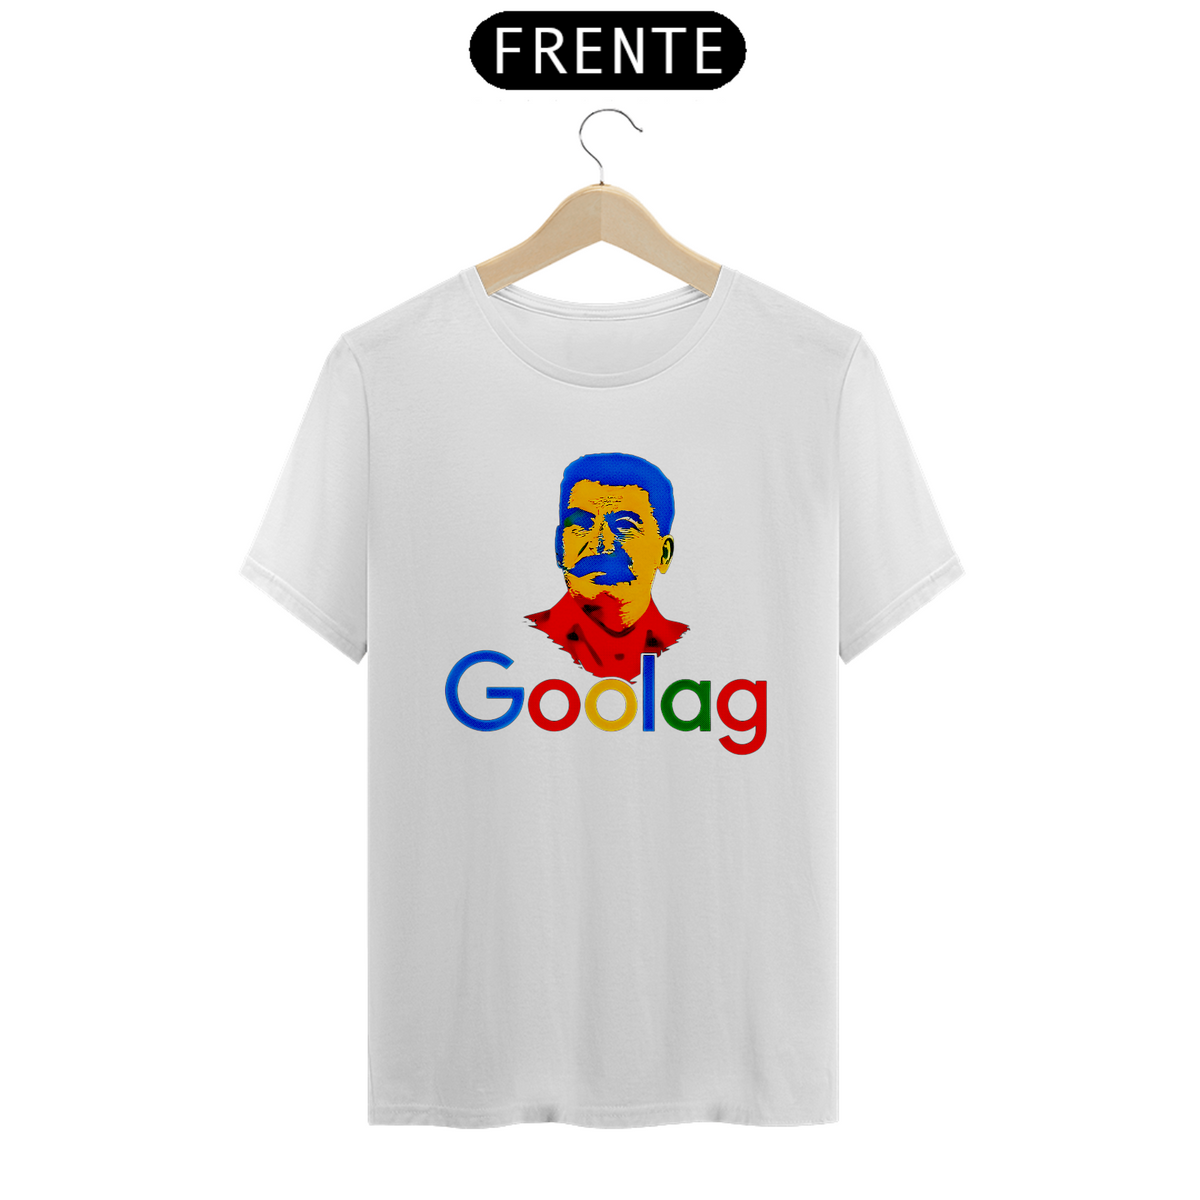 Nome do produto: Camiseta Goolag